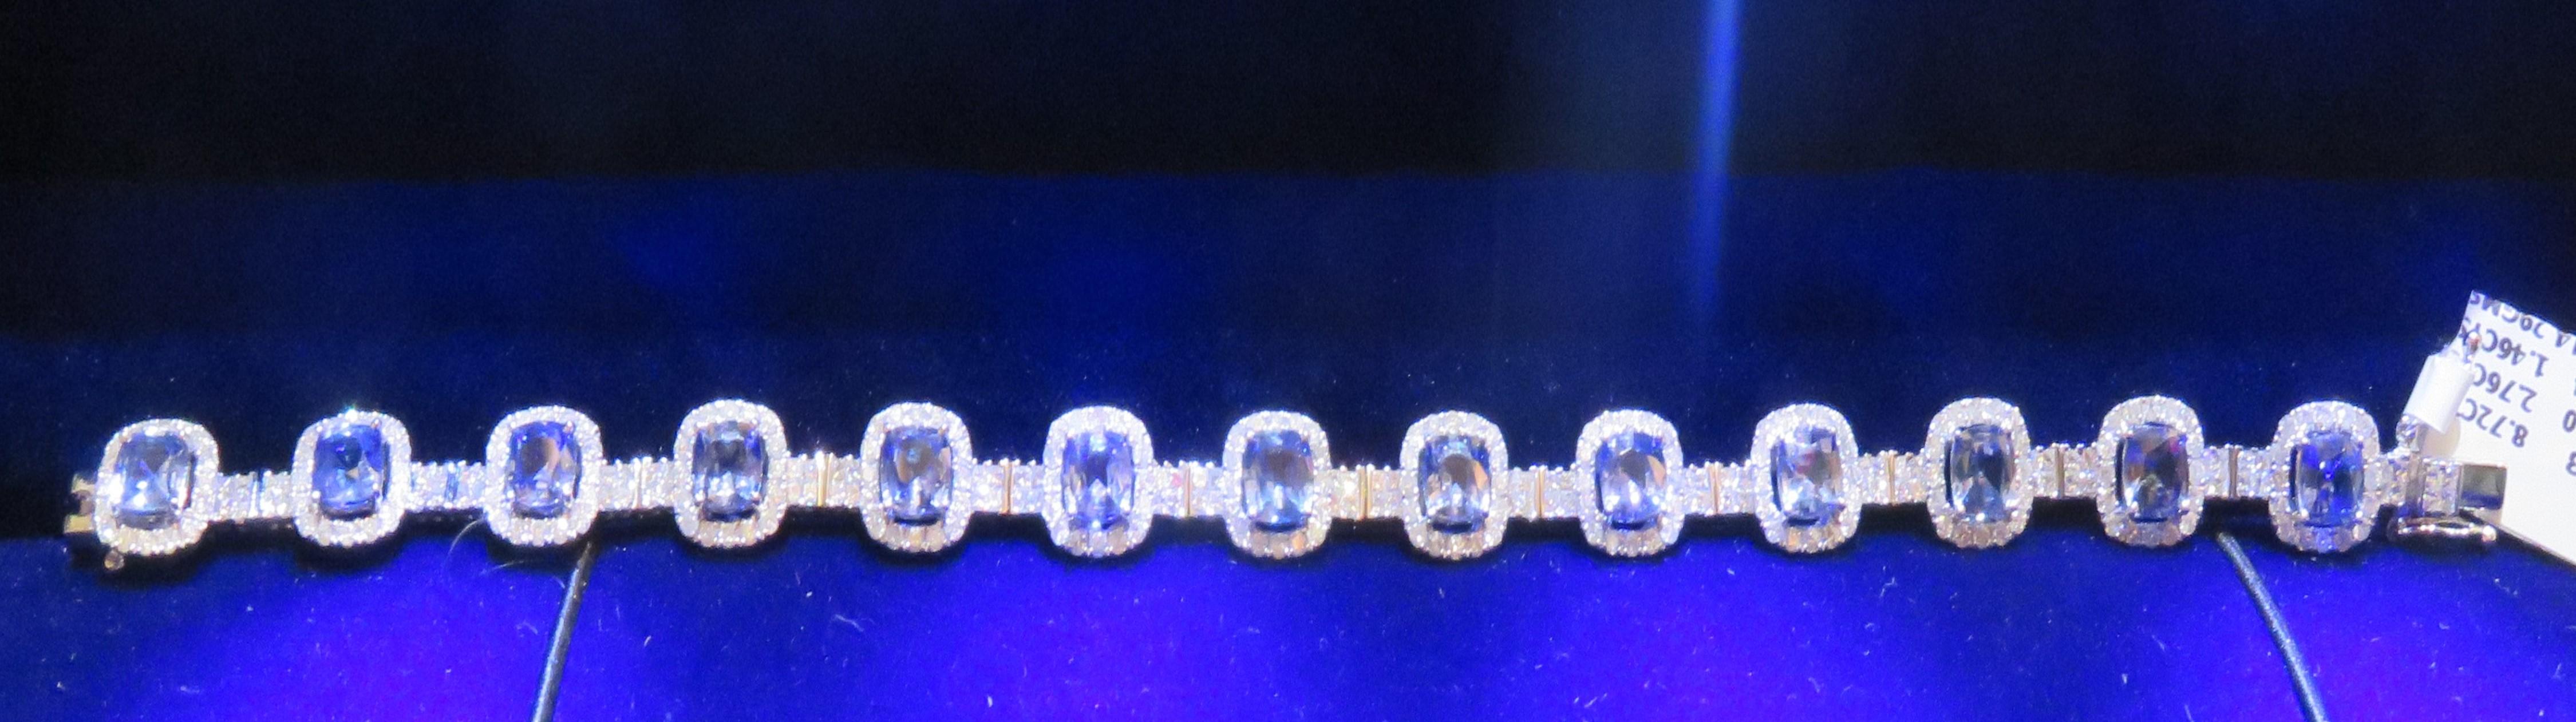 L'article suivant que nous offrons sont ces Extrêmement Rare Belle 18KT Or Fine Large Fancy Blue Sapphire Fine Magnificent Diamond Bracelet !!! Ces magnifiques saphirs rares sont superbes et scintillants et sont magnifiques ! Les diamants sont d'une